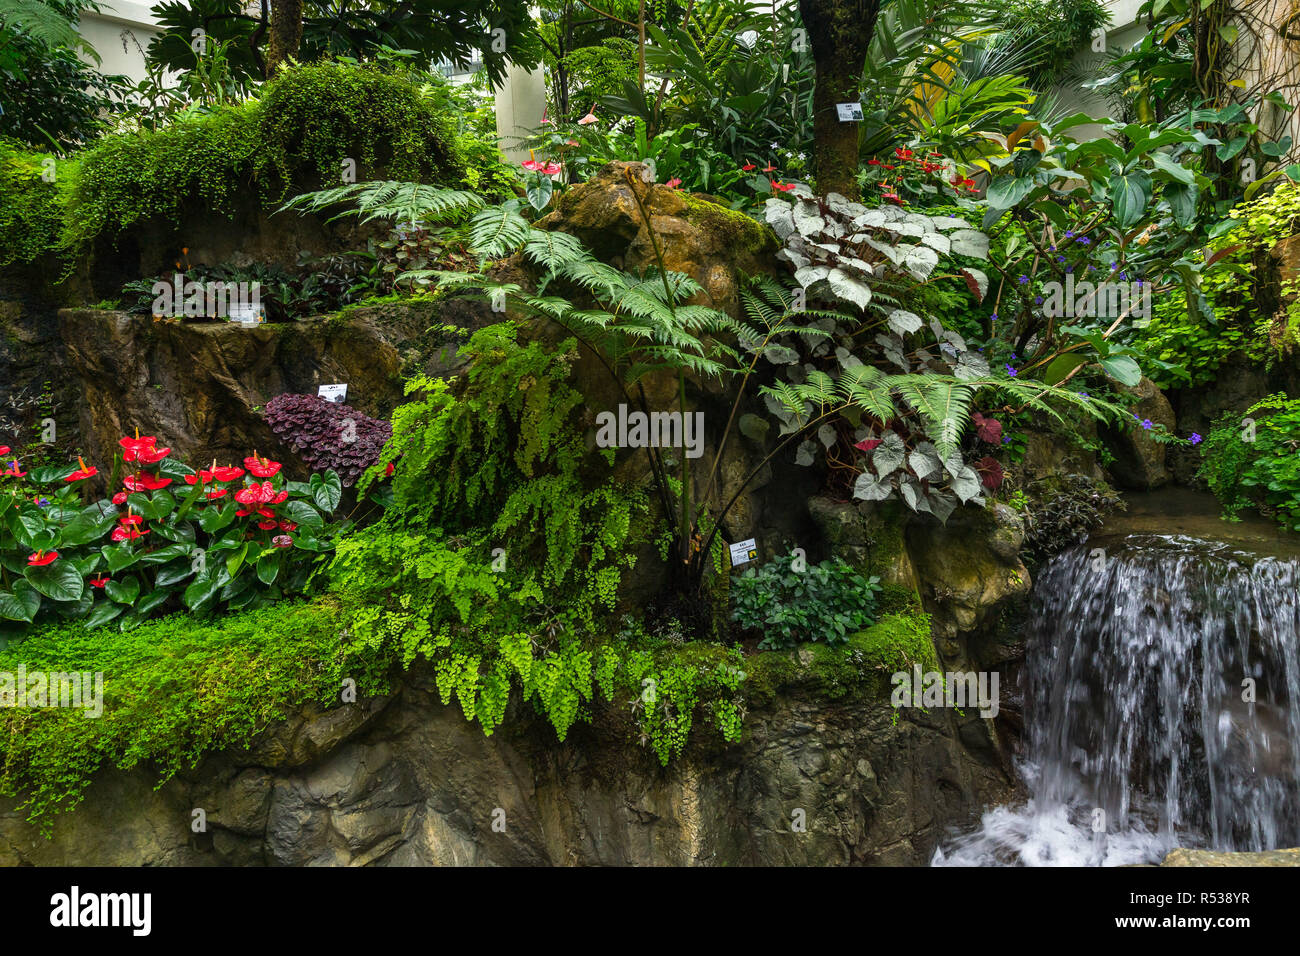 Forsgate Wintergarten an der Hong Kong Park mit tropischen Pflanzen und Dschungel Laub in den feuchten Anlage Haus Stockfoto